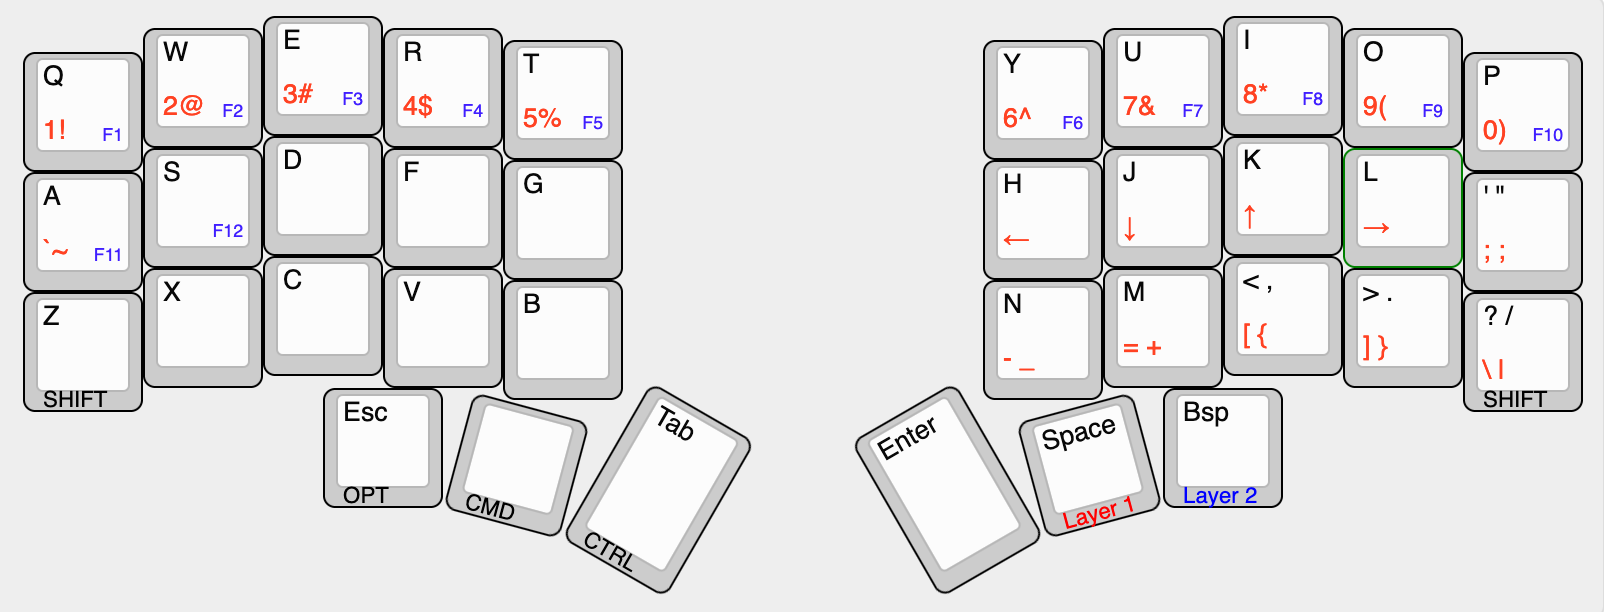 36-key custom keyboard layout